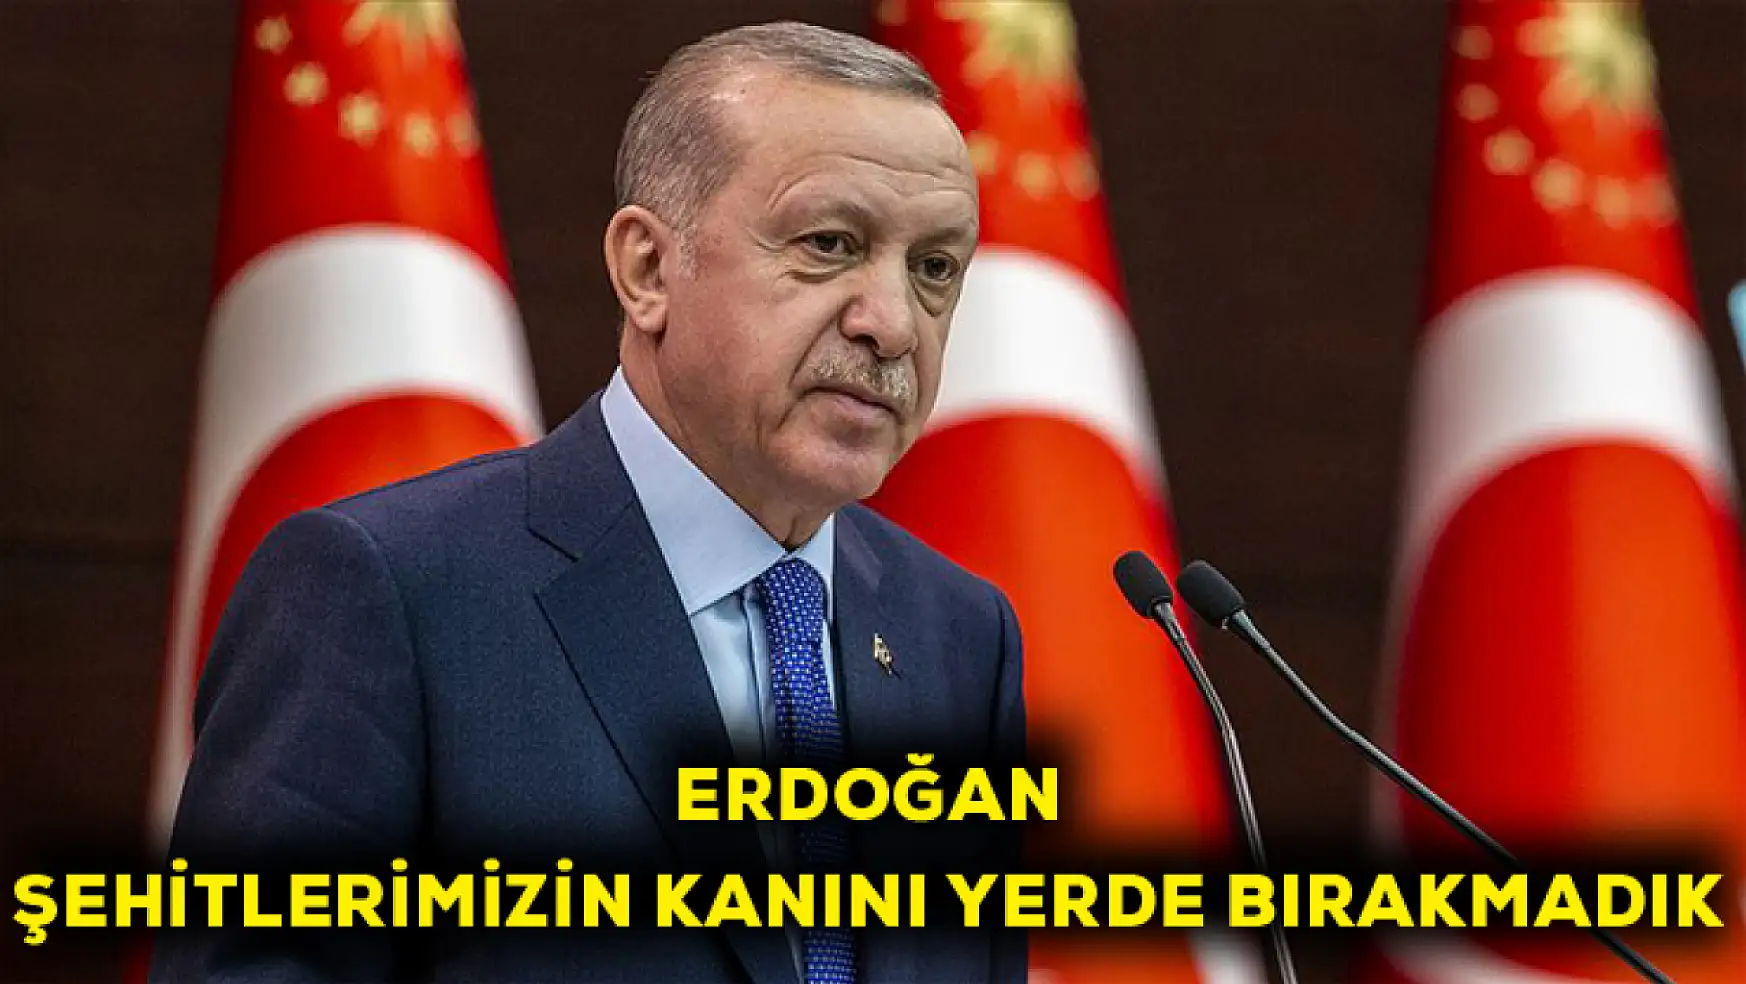 Erdoğan: Şehitlerimizin kanını yerde bırakmadık